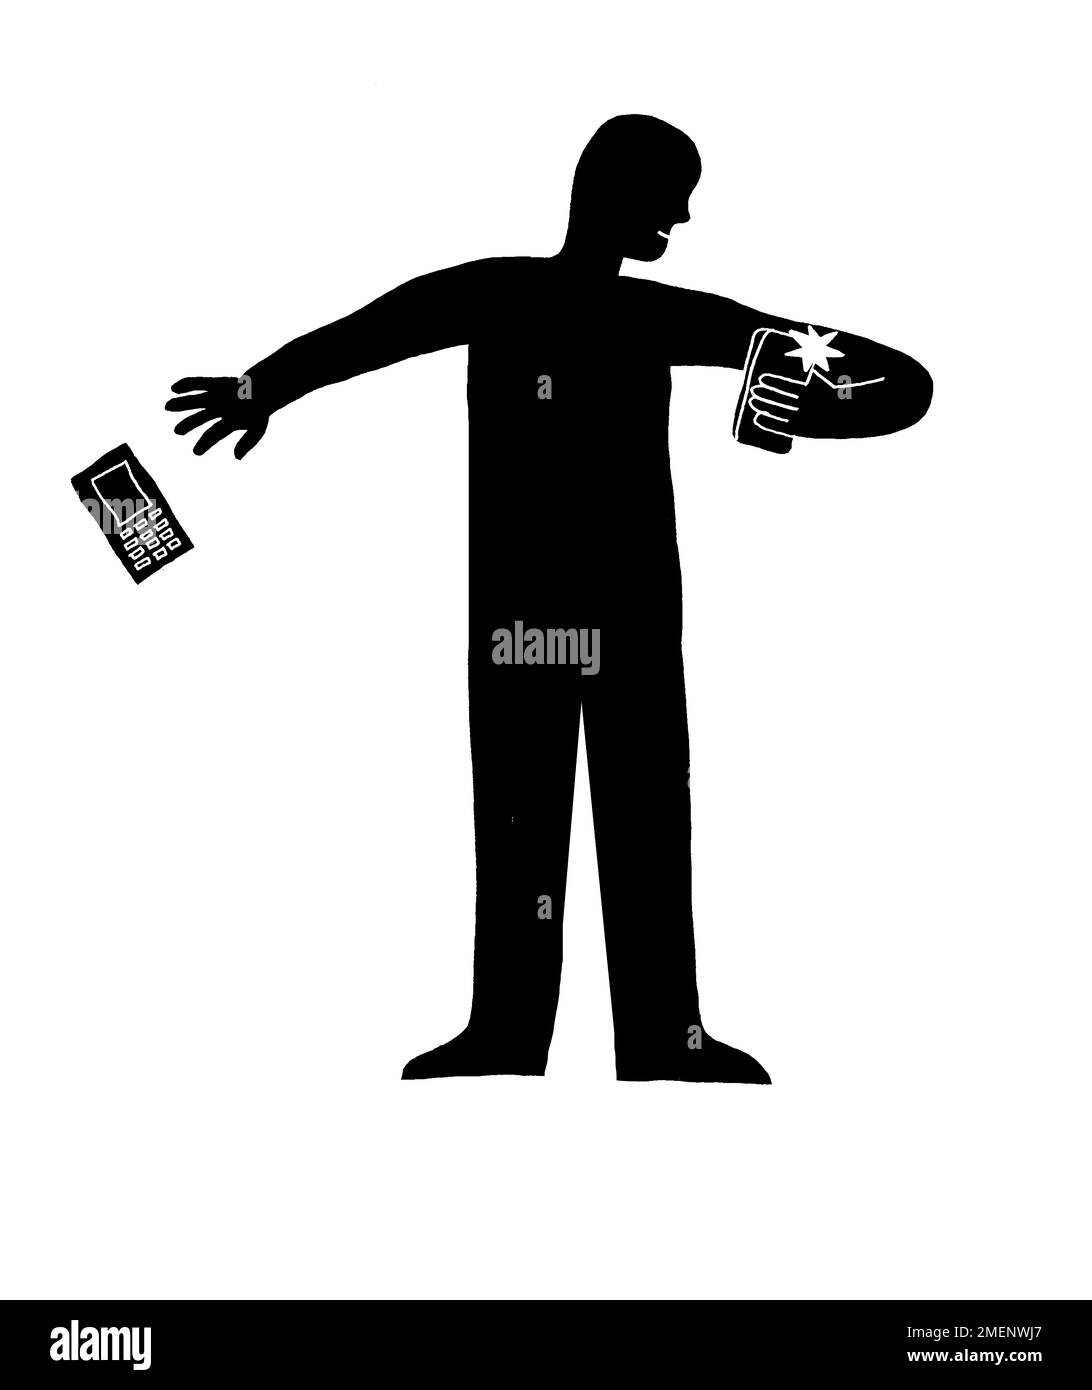 Illustrazione in bianco e nero dell'uomo con il nuovo telefono nella mano destra e gettando via il suo vecchio telefono con la sua sinistra Foto Stock